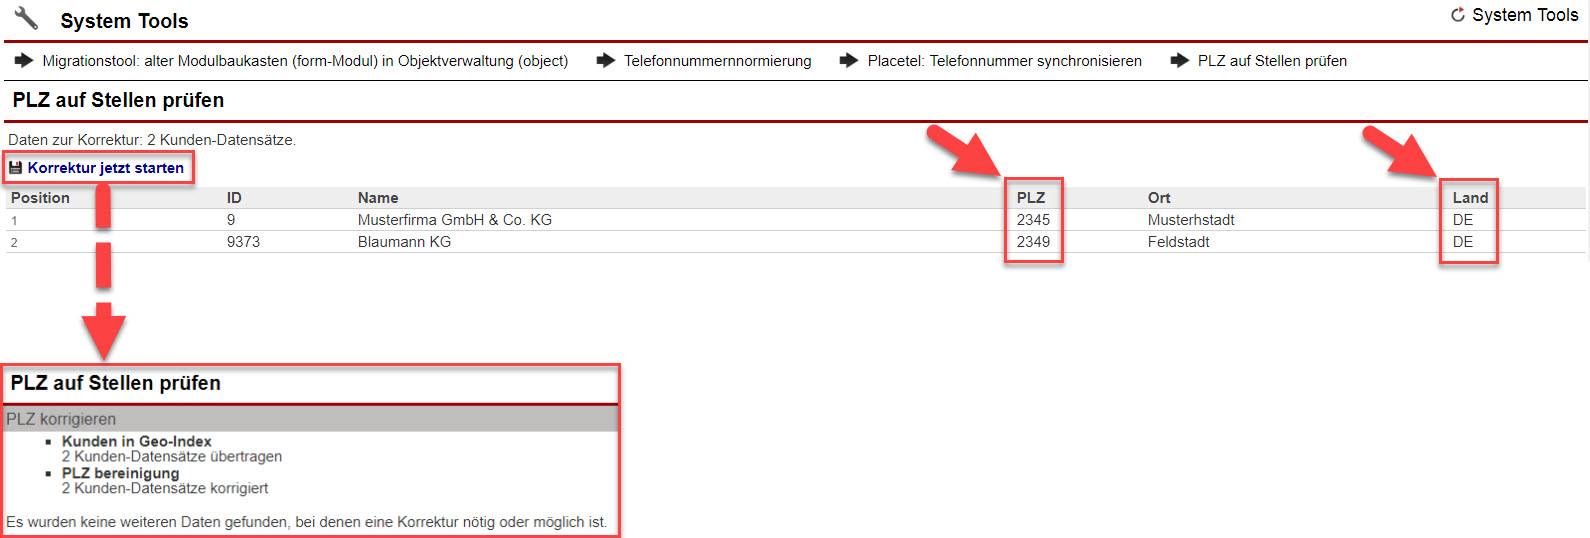 Screenshot des System-Tools "PLZ auf Stellen prüfen"